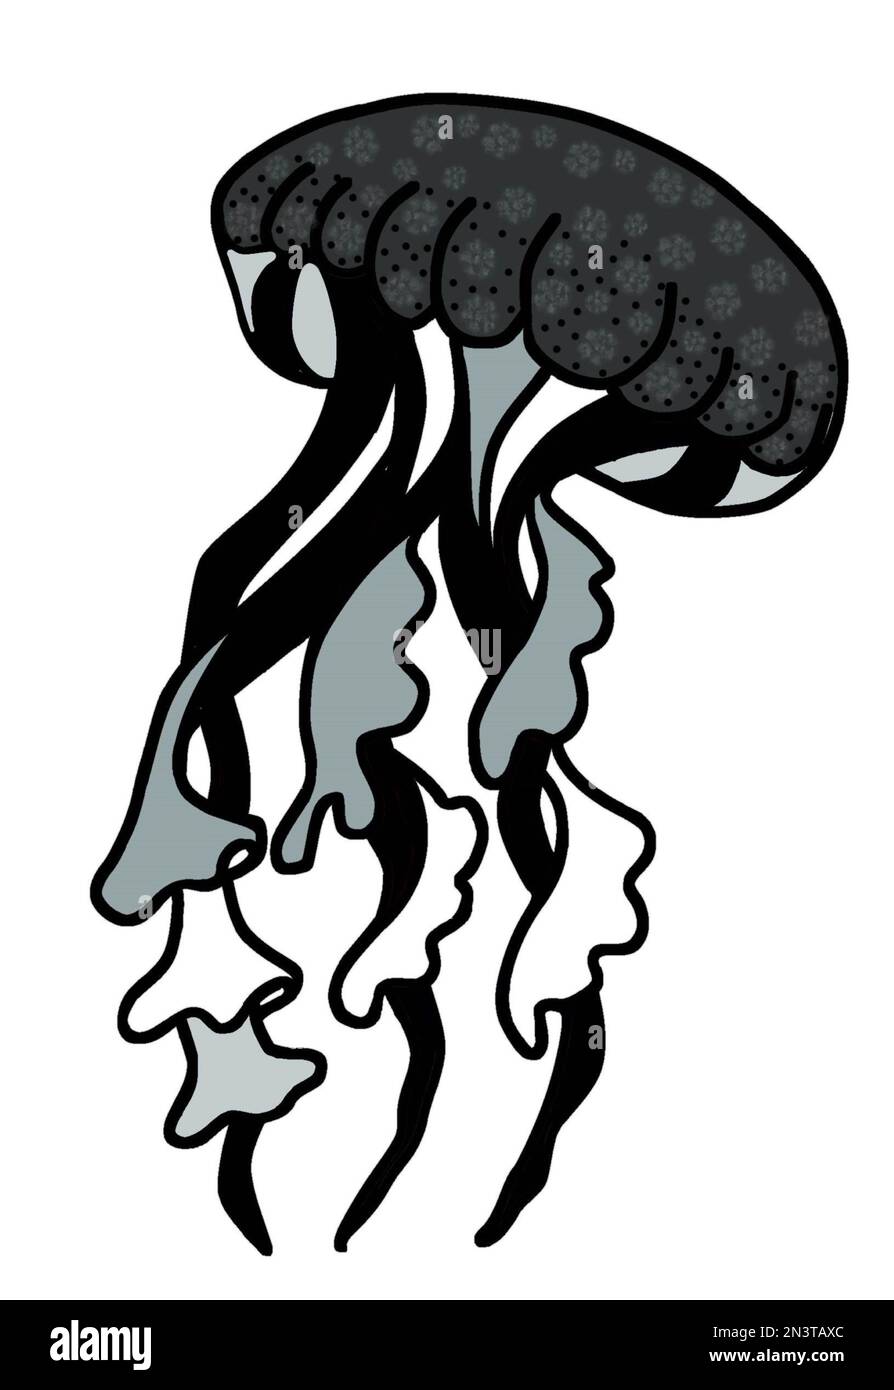 Illustration de méduses noir et blanc monochromes aux tentacules ondulées. Illustration JPEG vie marine pour les autocollants, la création de motifs, le papier peint. Banque D'Images